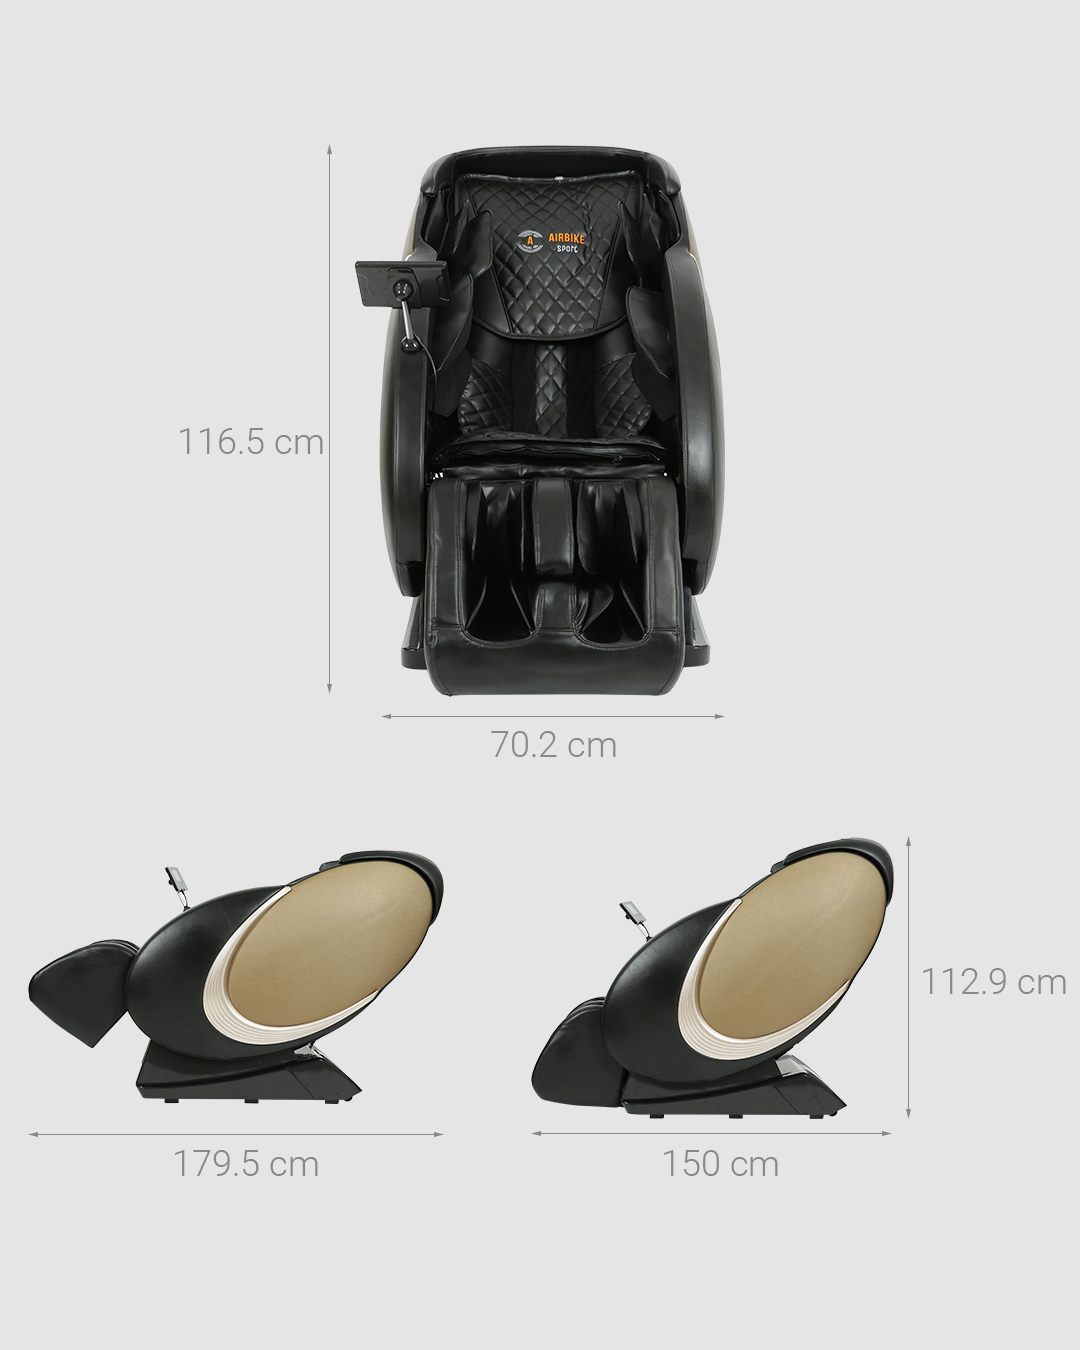 Ghế Massage Toàn Thân Cao Cấp 4D Air Bike MK335 - Hàng Chính Hãng